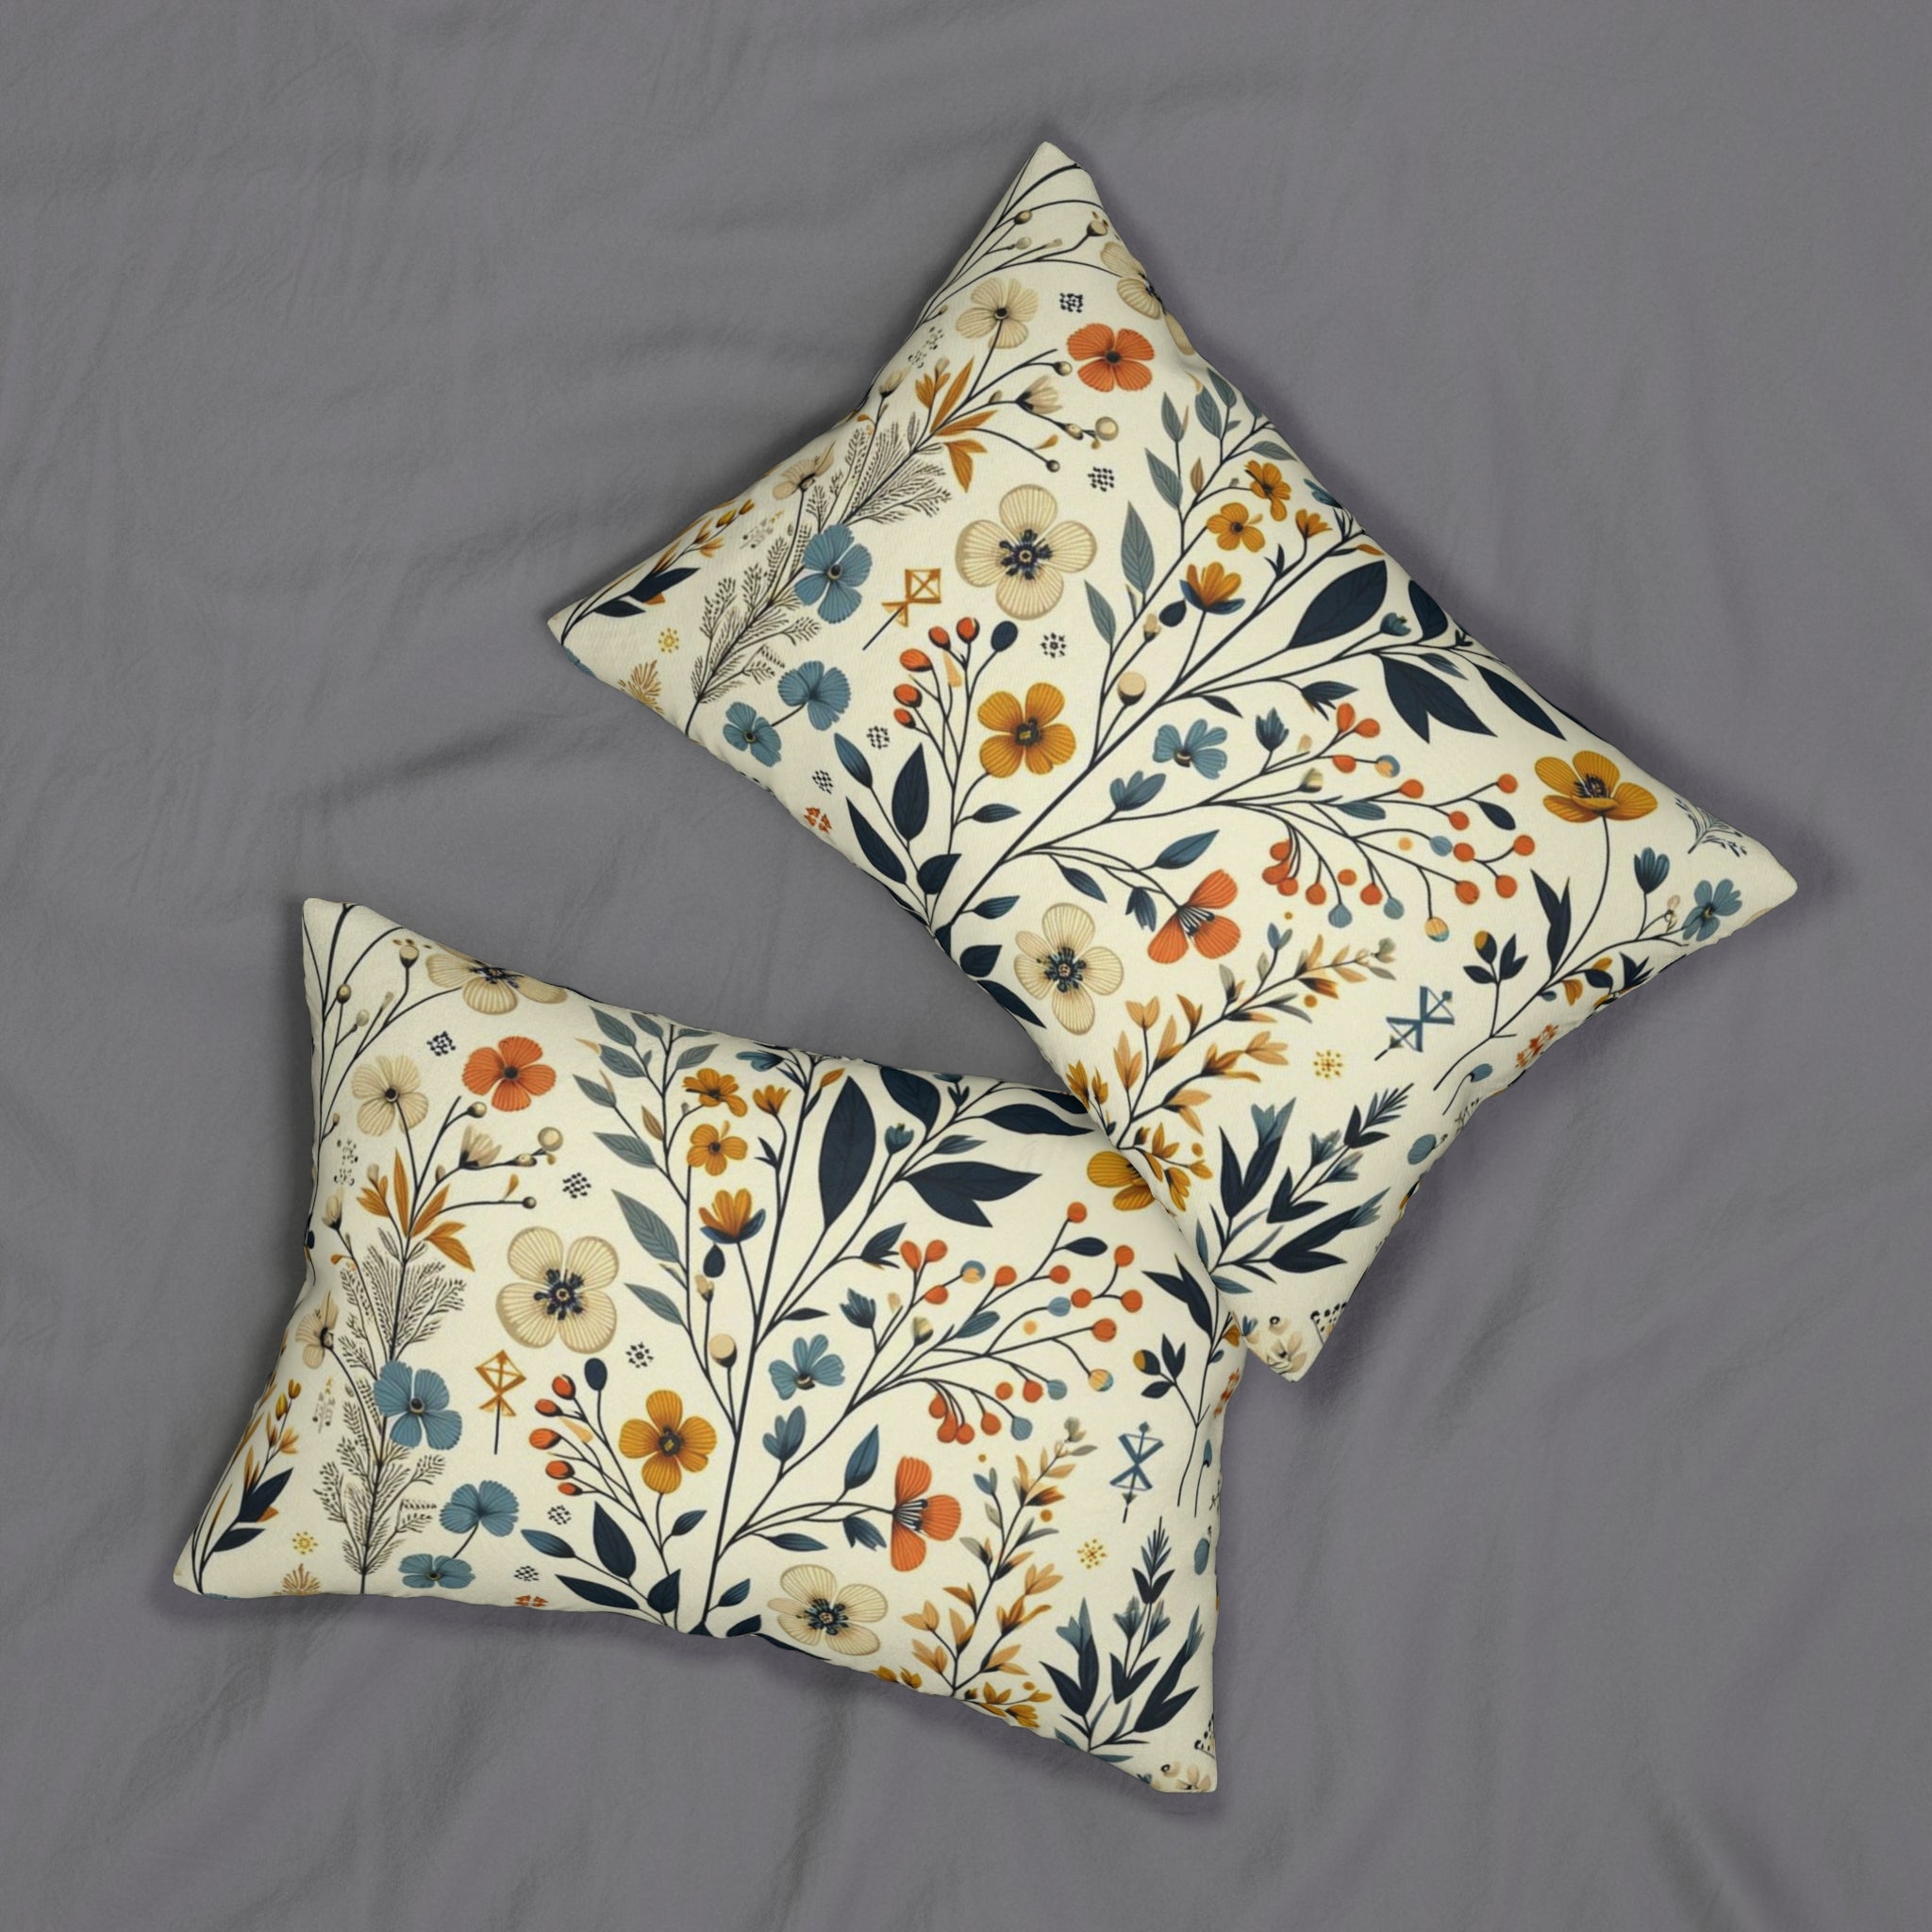 Modern Danish Scandinavian Designed Floral Mid Century Modern Golden Yellow, Royal Blue Lumbar Pillow